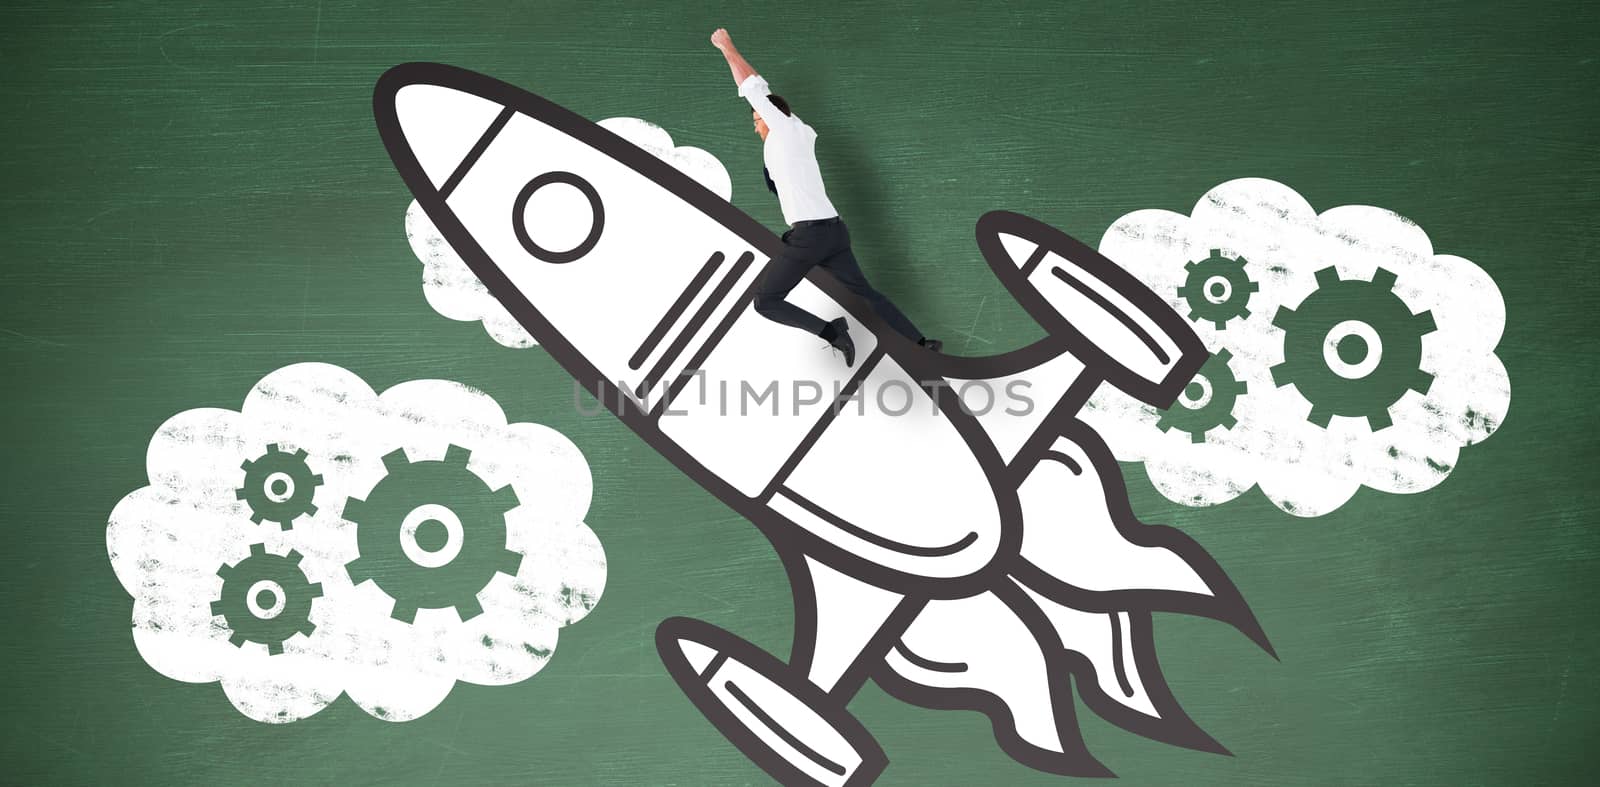 Flying businessman against green chalkboard